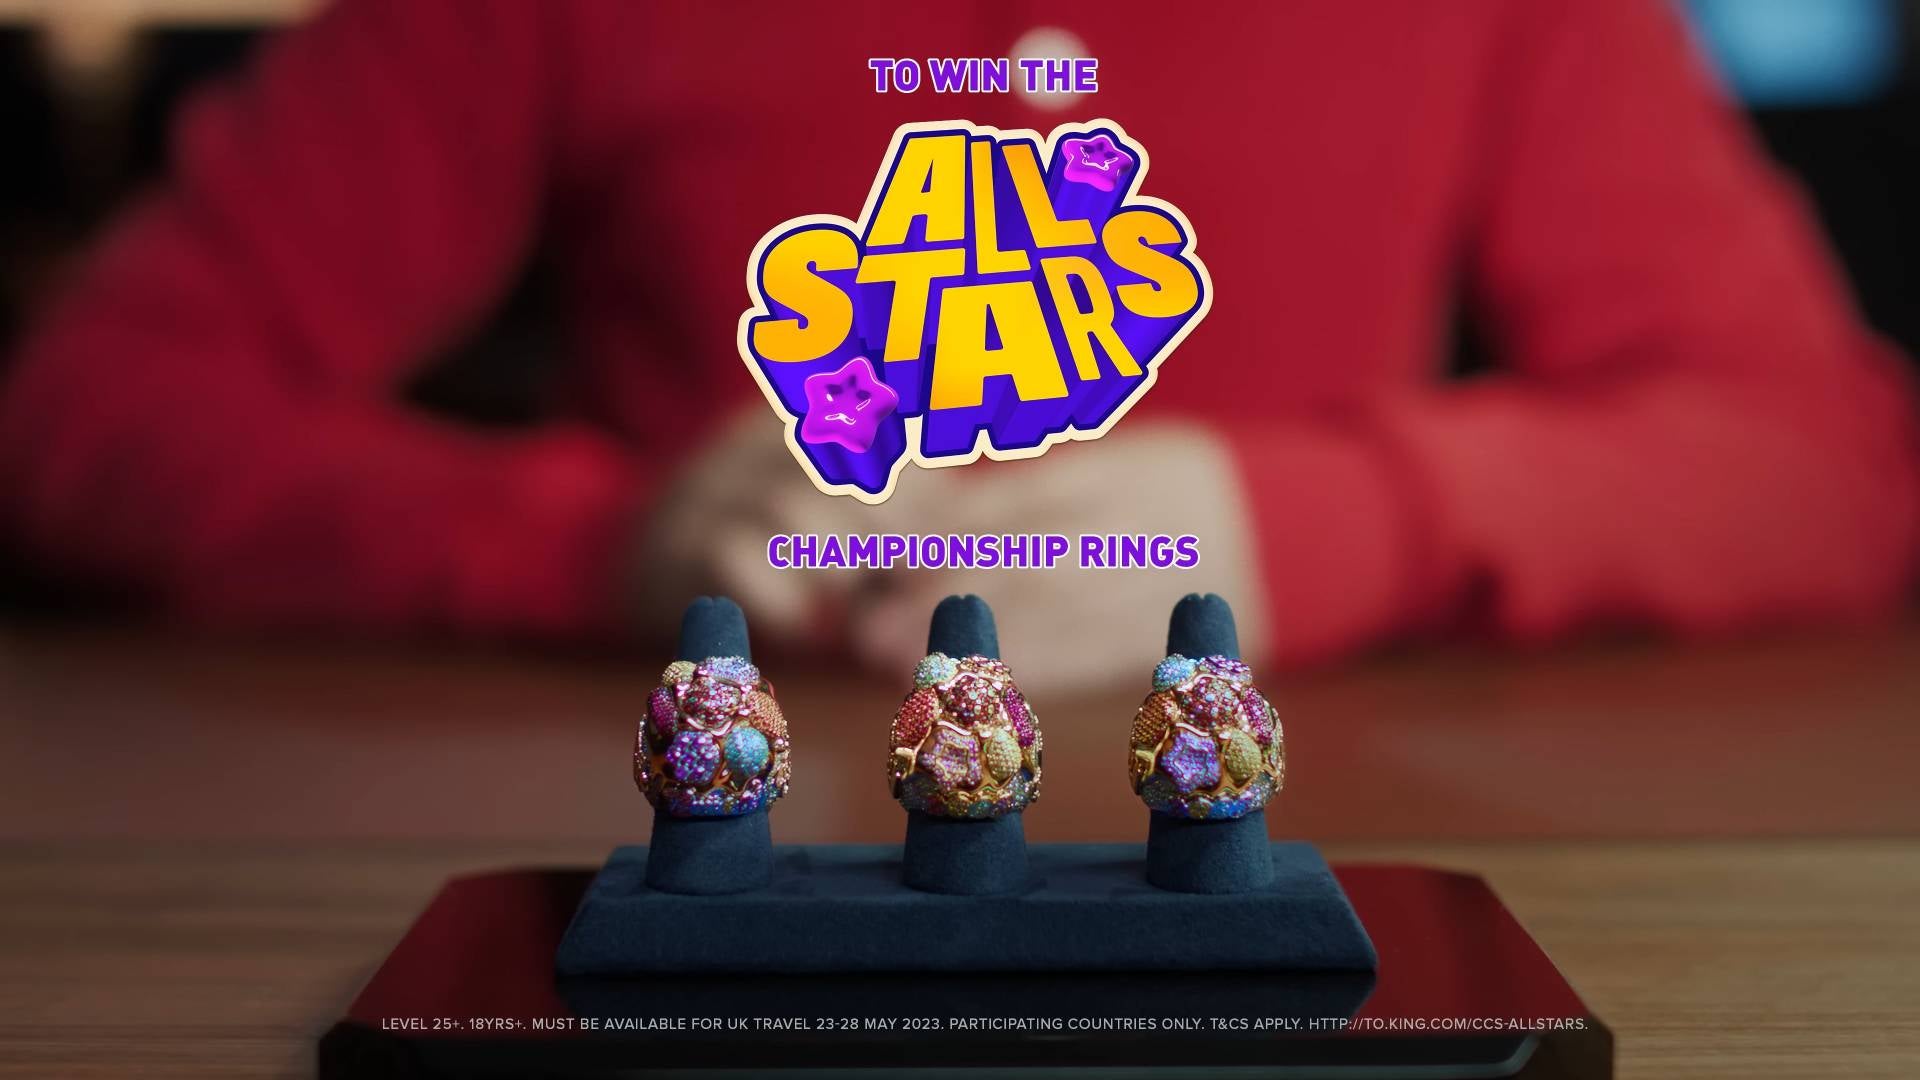 Los All Stars anuncian qué anillos de dulces pueden ganar los competidores en el torneo.